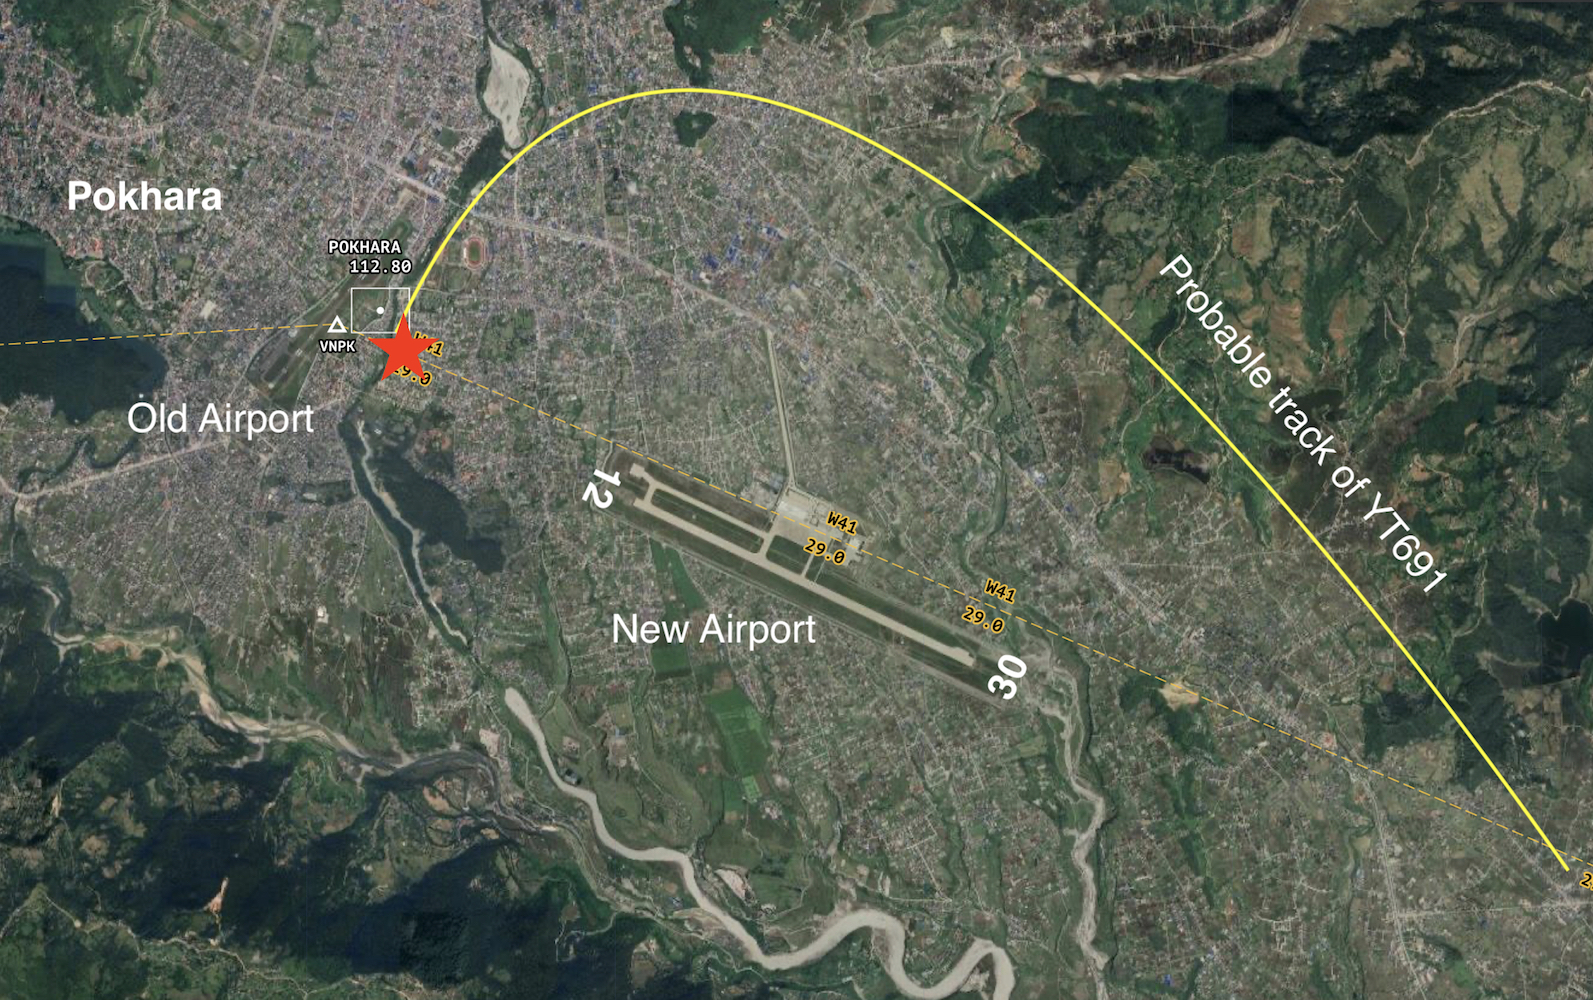 Nepal-Pokhara-plane-crash-NT.jpg